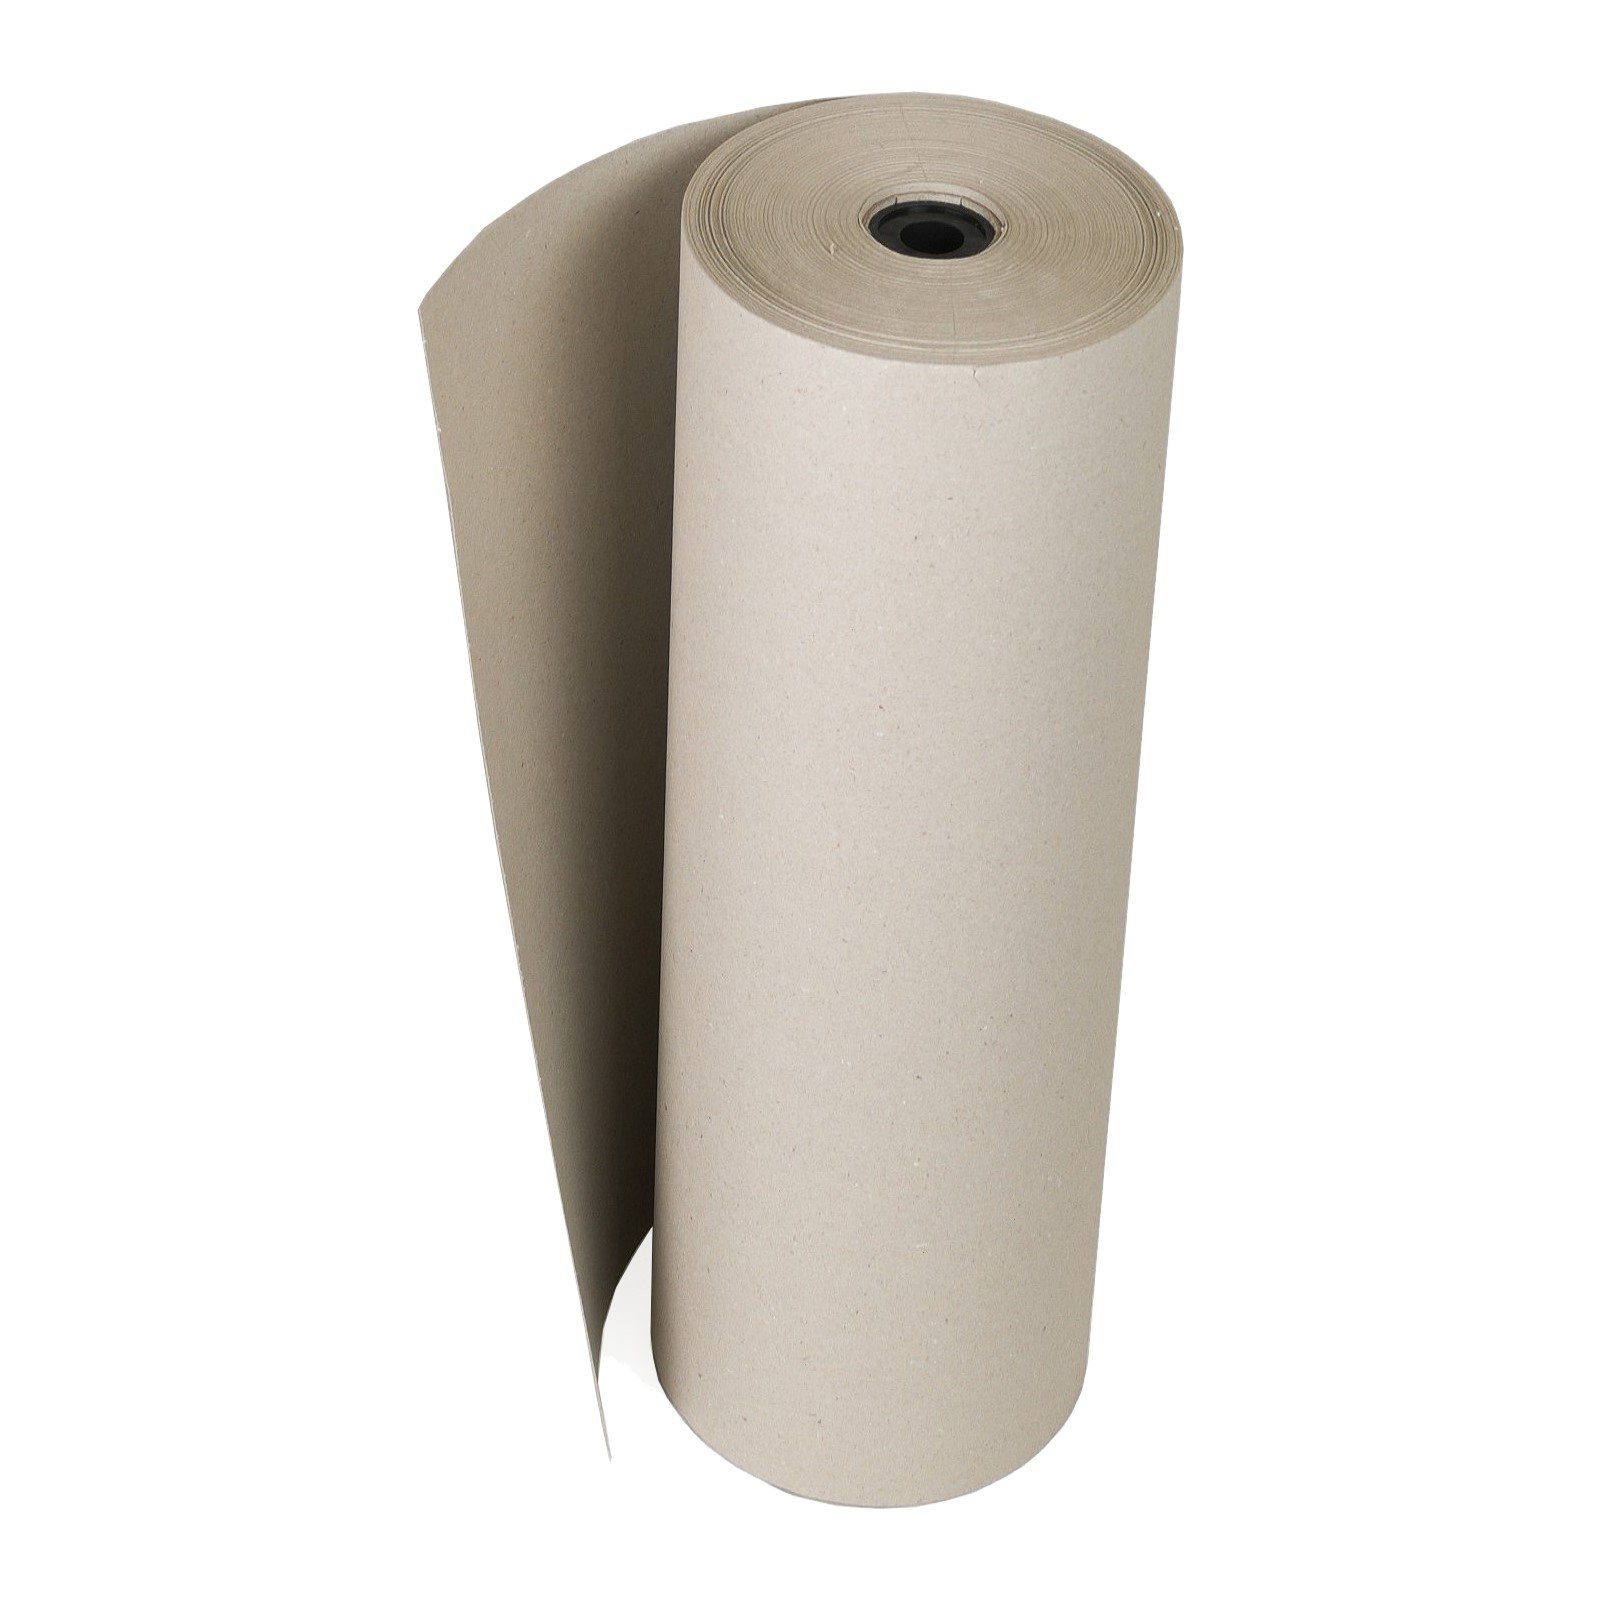 120g/m² Seidenpapier, Rollen-Schrenzpapier 250m Verpackungen Packpapier Füllmaterial Grau KK 0,75x